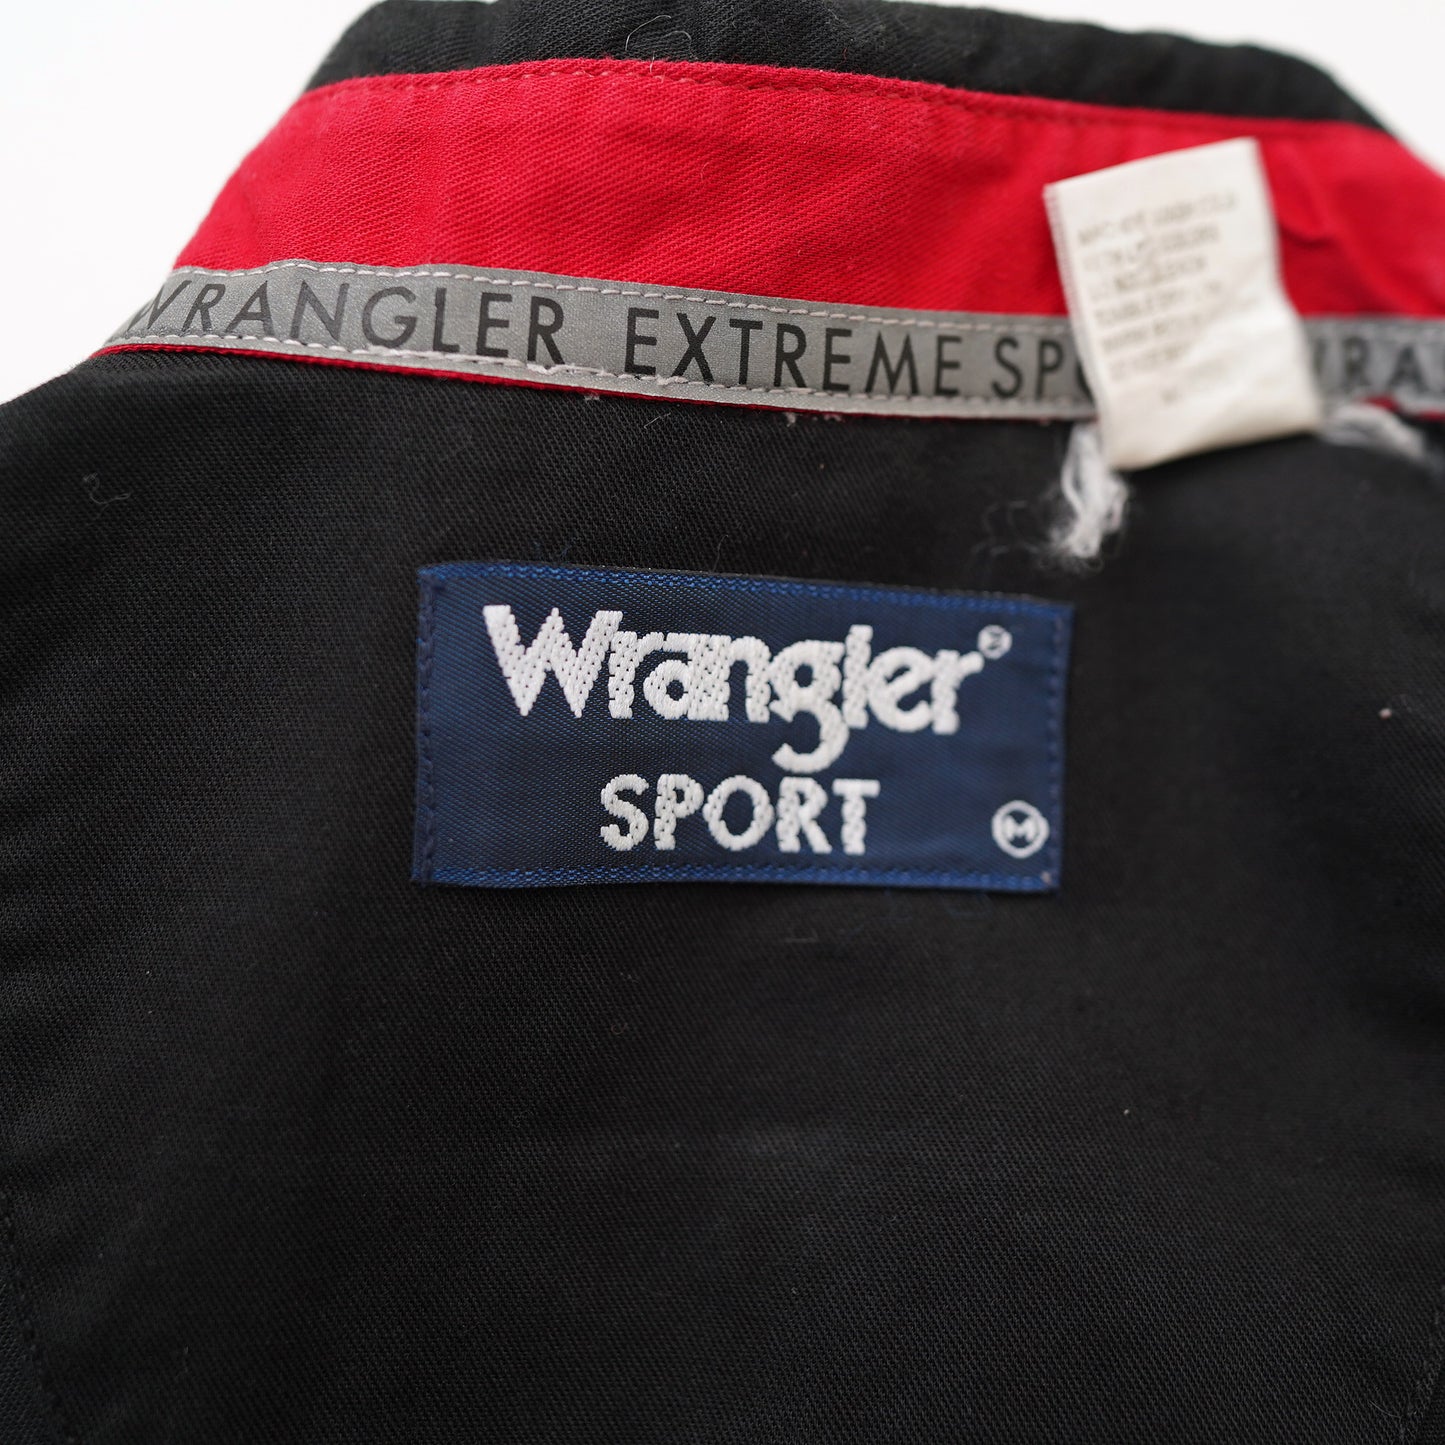 Wrangler stripe shirt